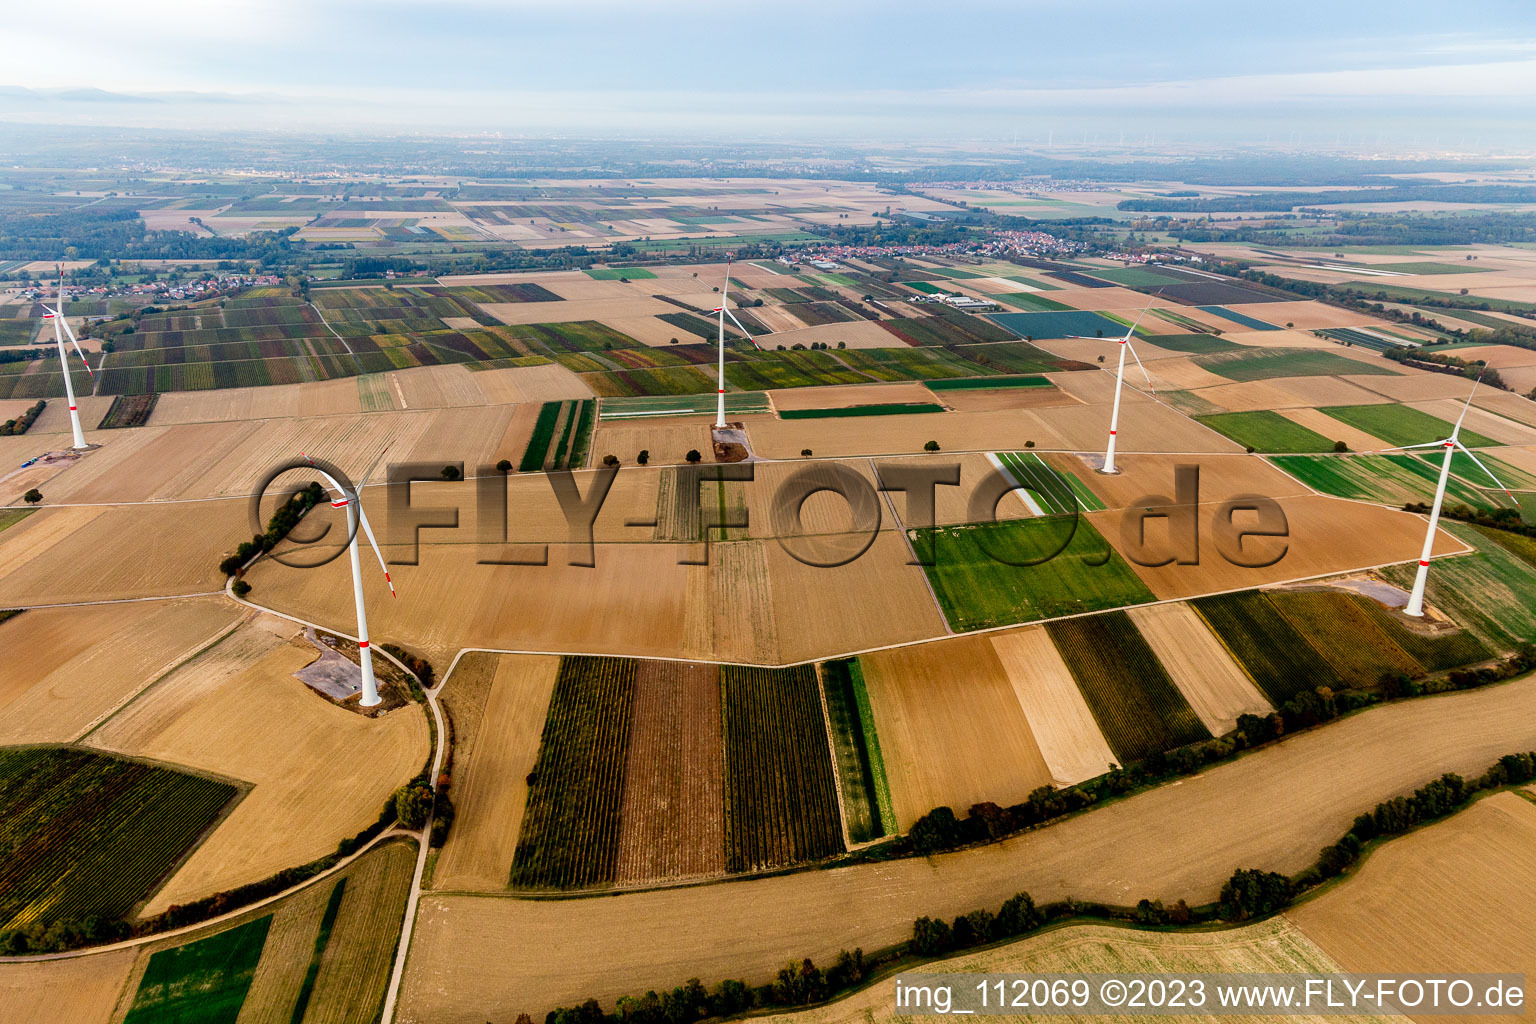 Parc éolien EnBW - éolienne avec 6 éoliennes à Freckenfeld dans le département Rhénanie-Palatinat, Allemagne depuis l'avion